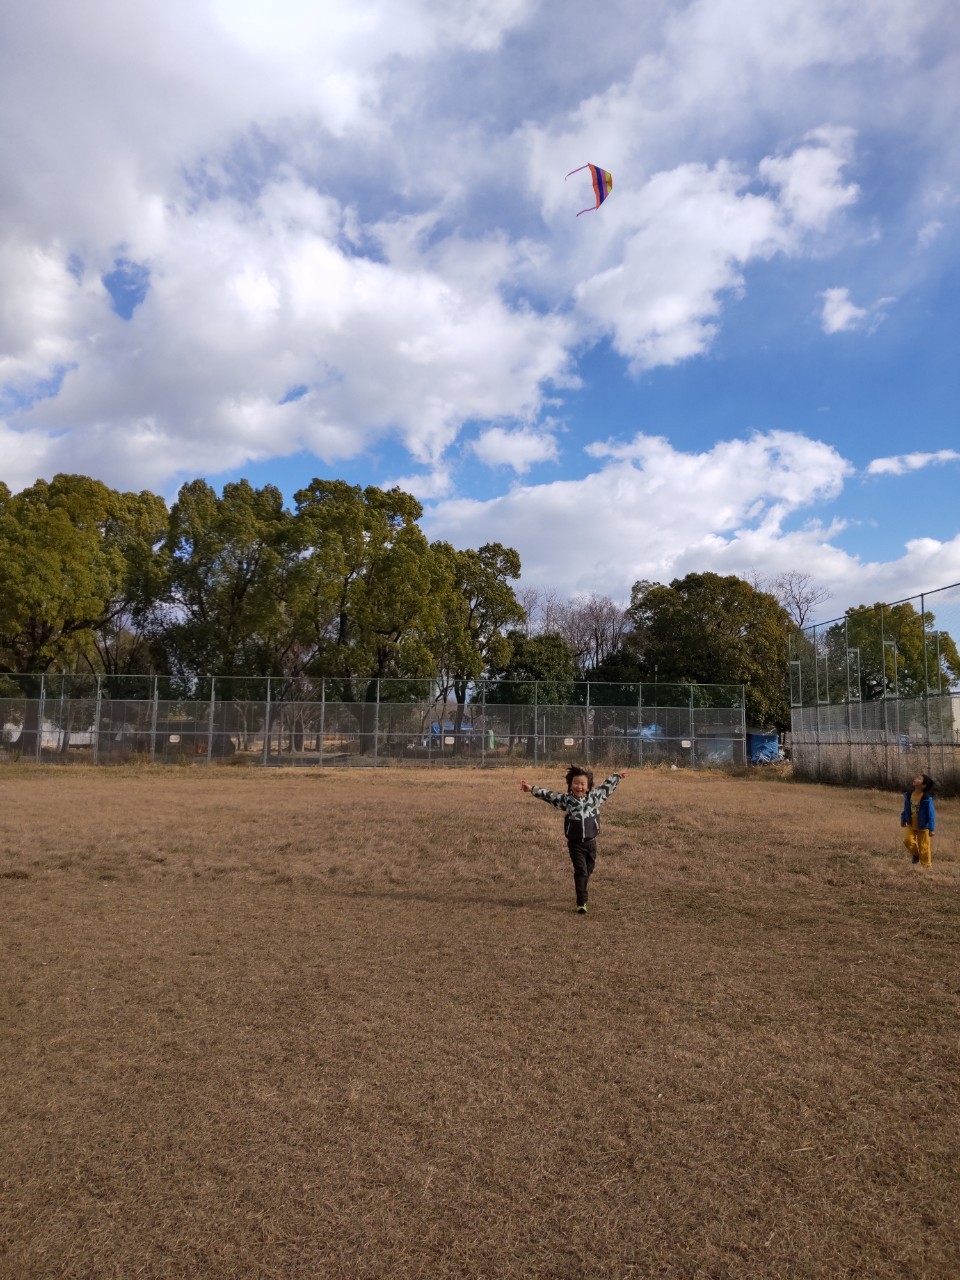 凧揚げなど正月遊びを楽しむオハナピースの利用児童